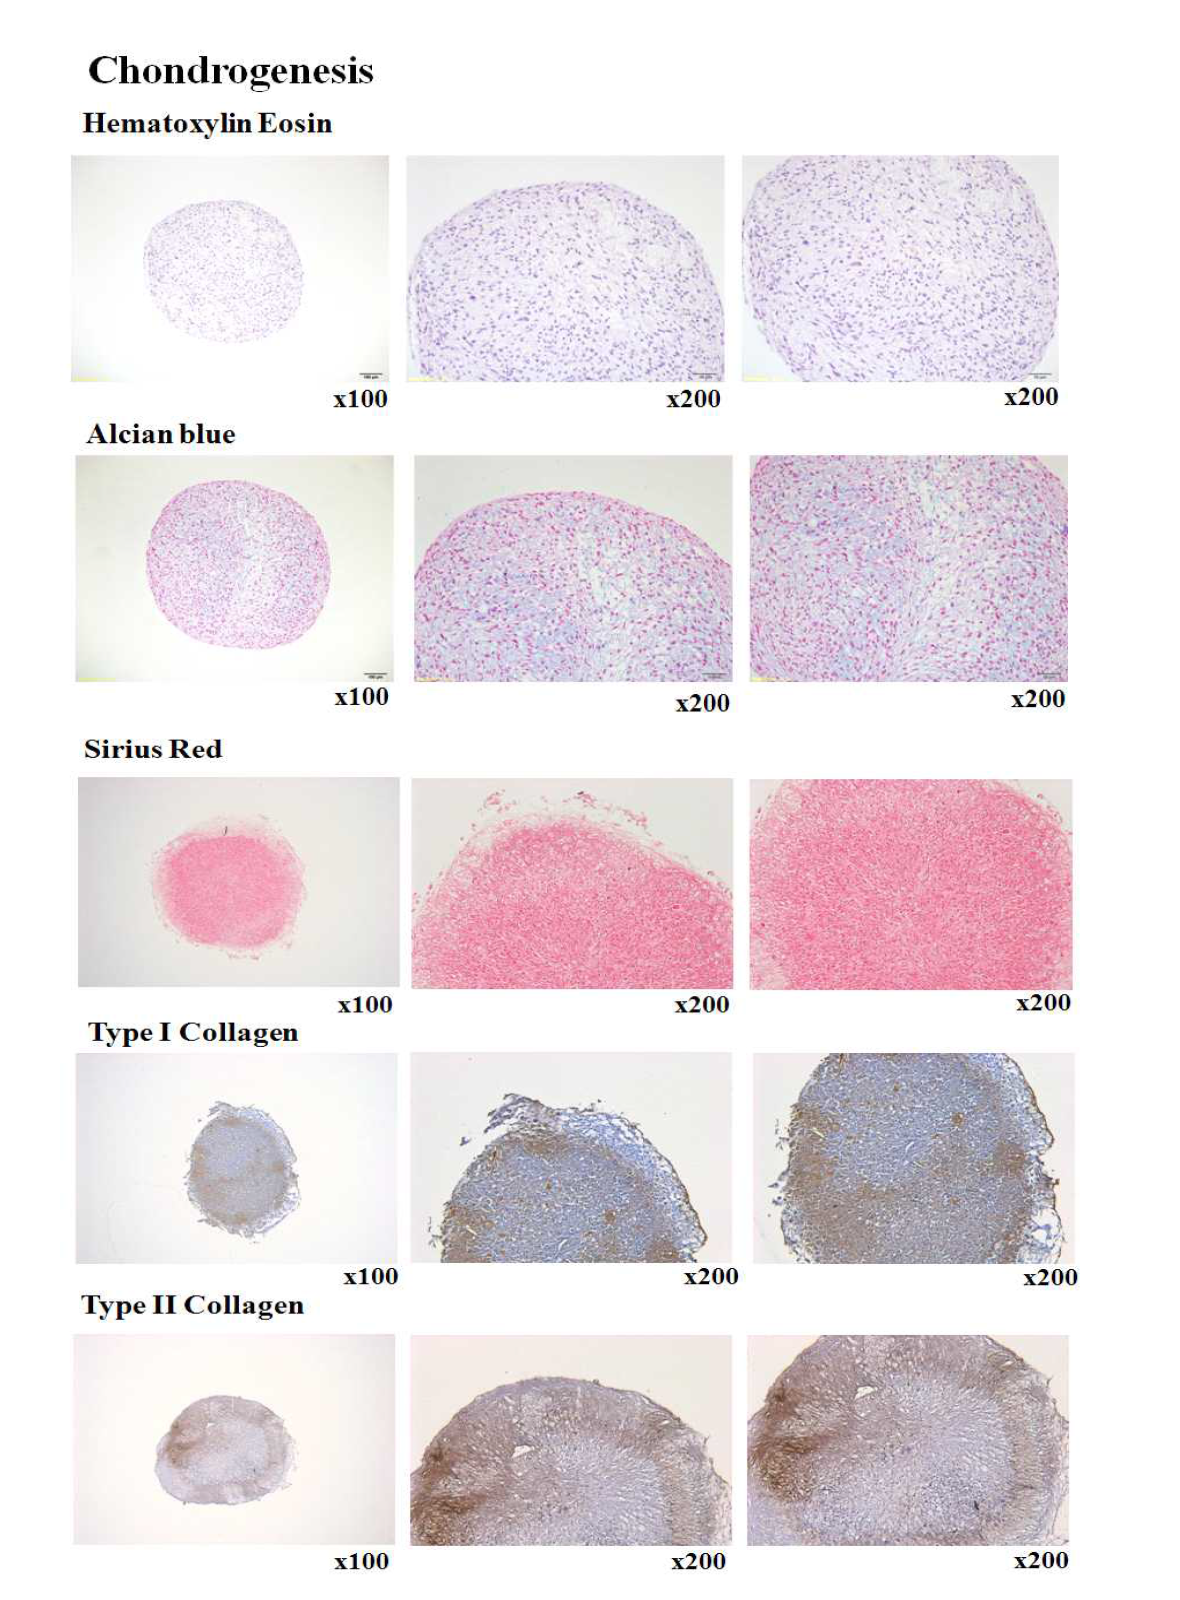 골수유래 중간엽줄기세포의 Chondrogenesis 확인